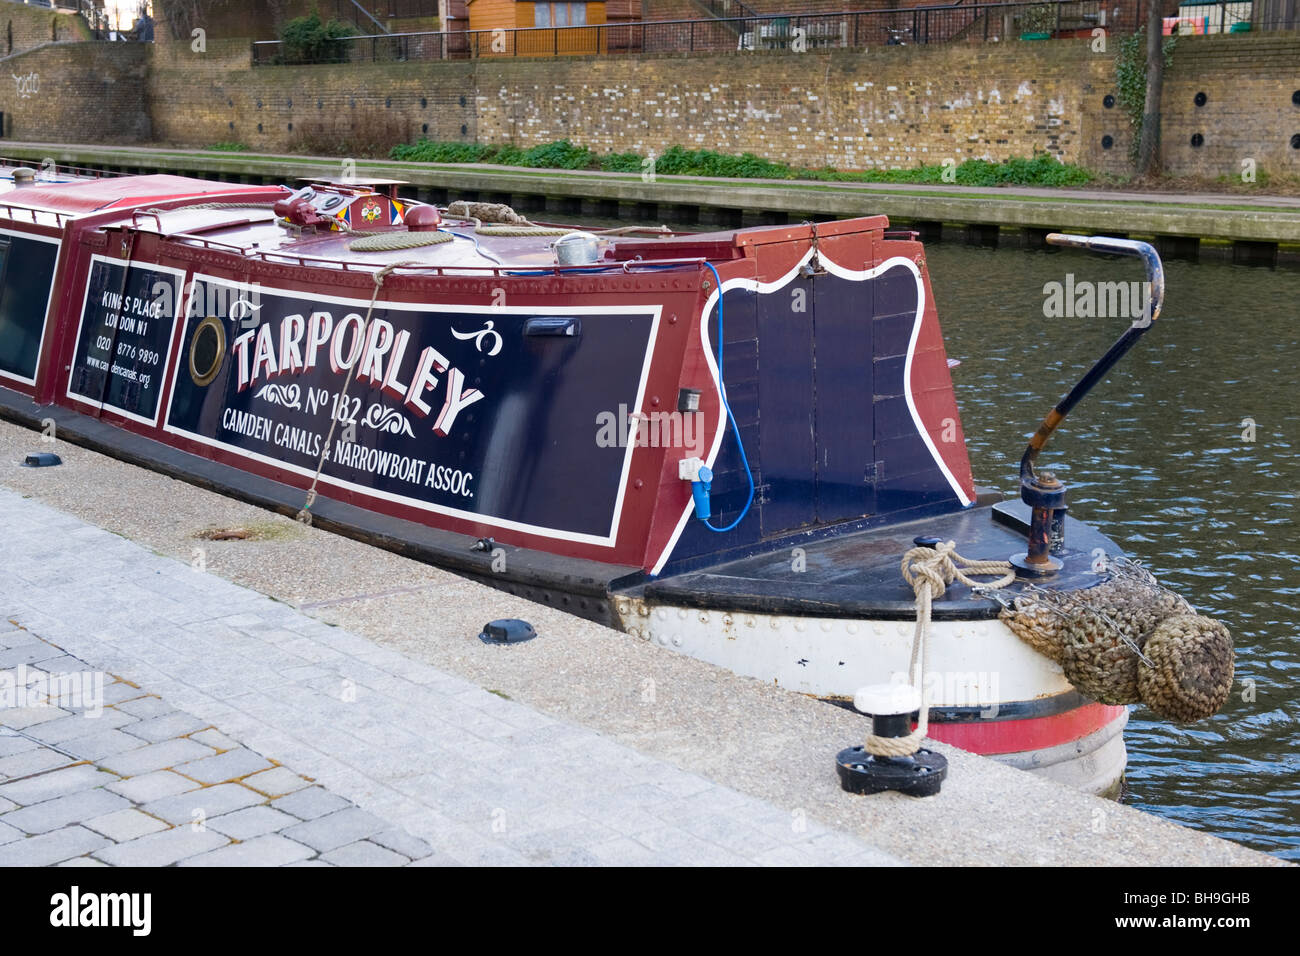 Longboat oder Schiff am Regents Kanal, vor Anker von Kings Place eingeschrieben Tarporley, Camden Kanäle & Narrowboat Association Stockfoto